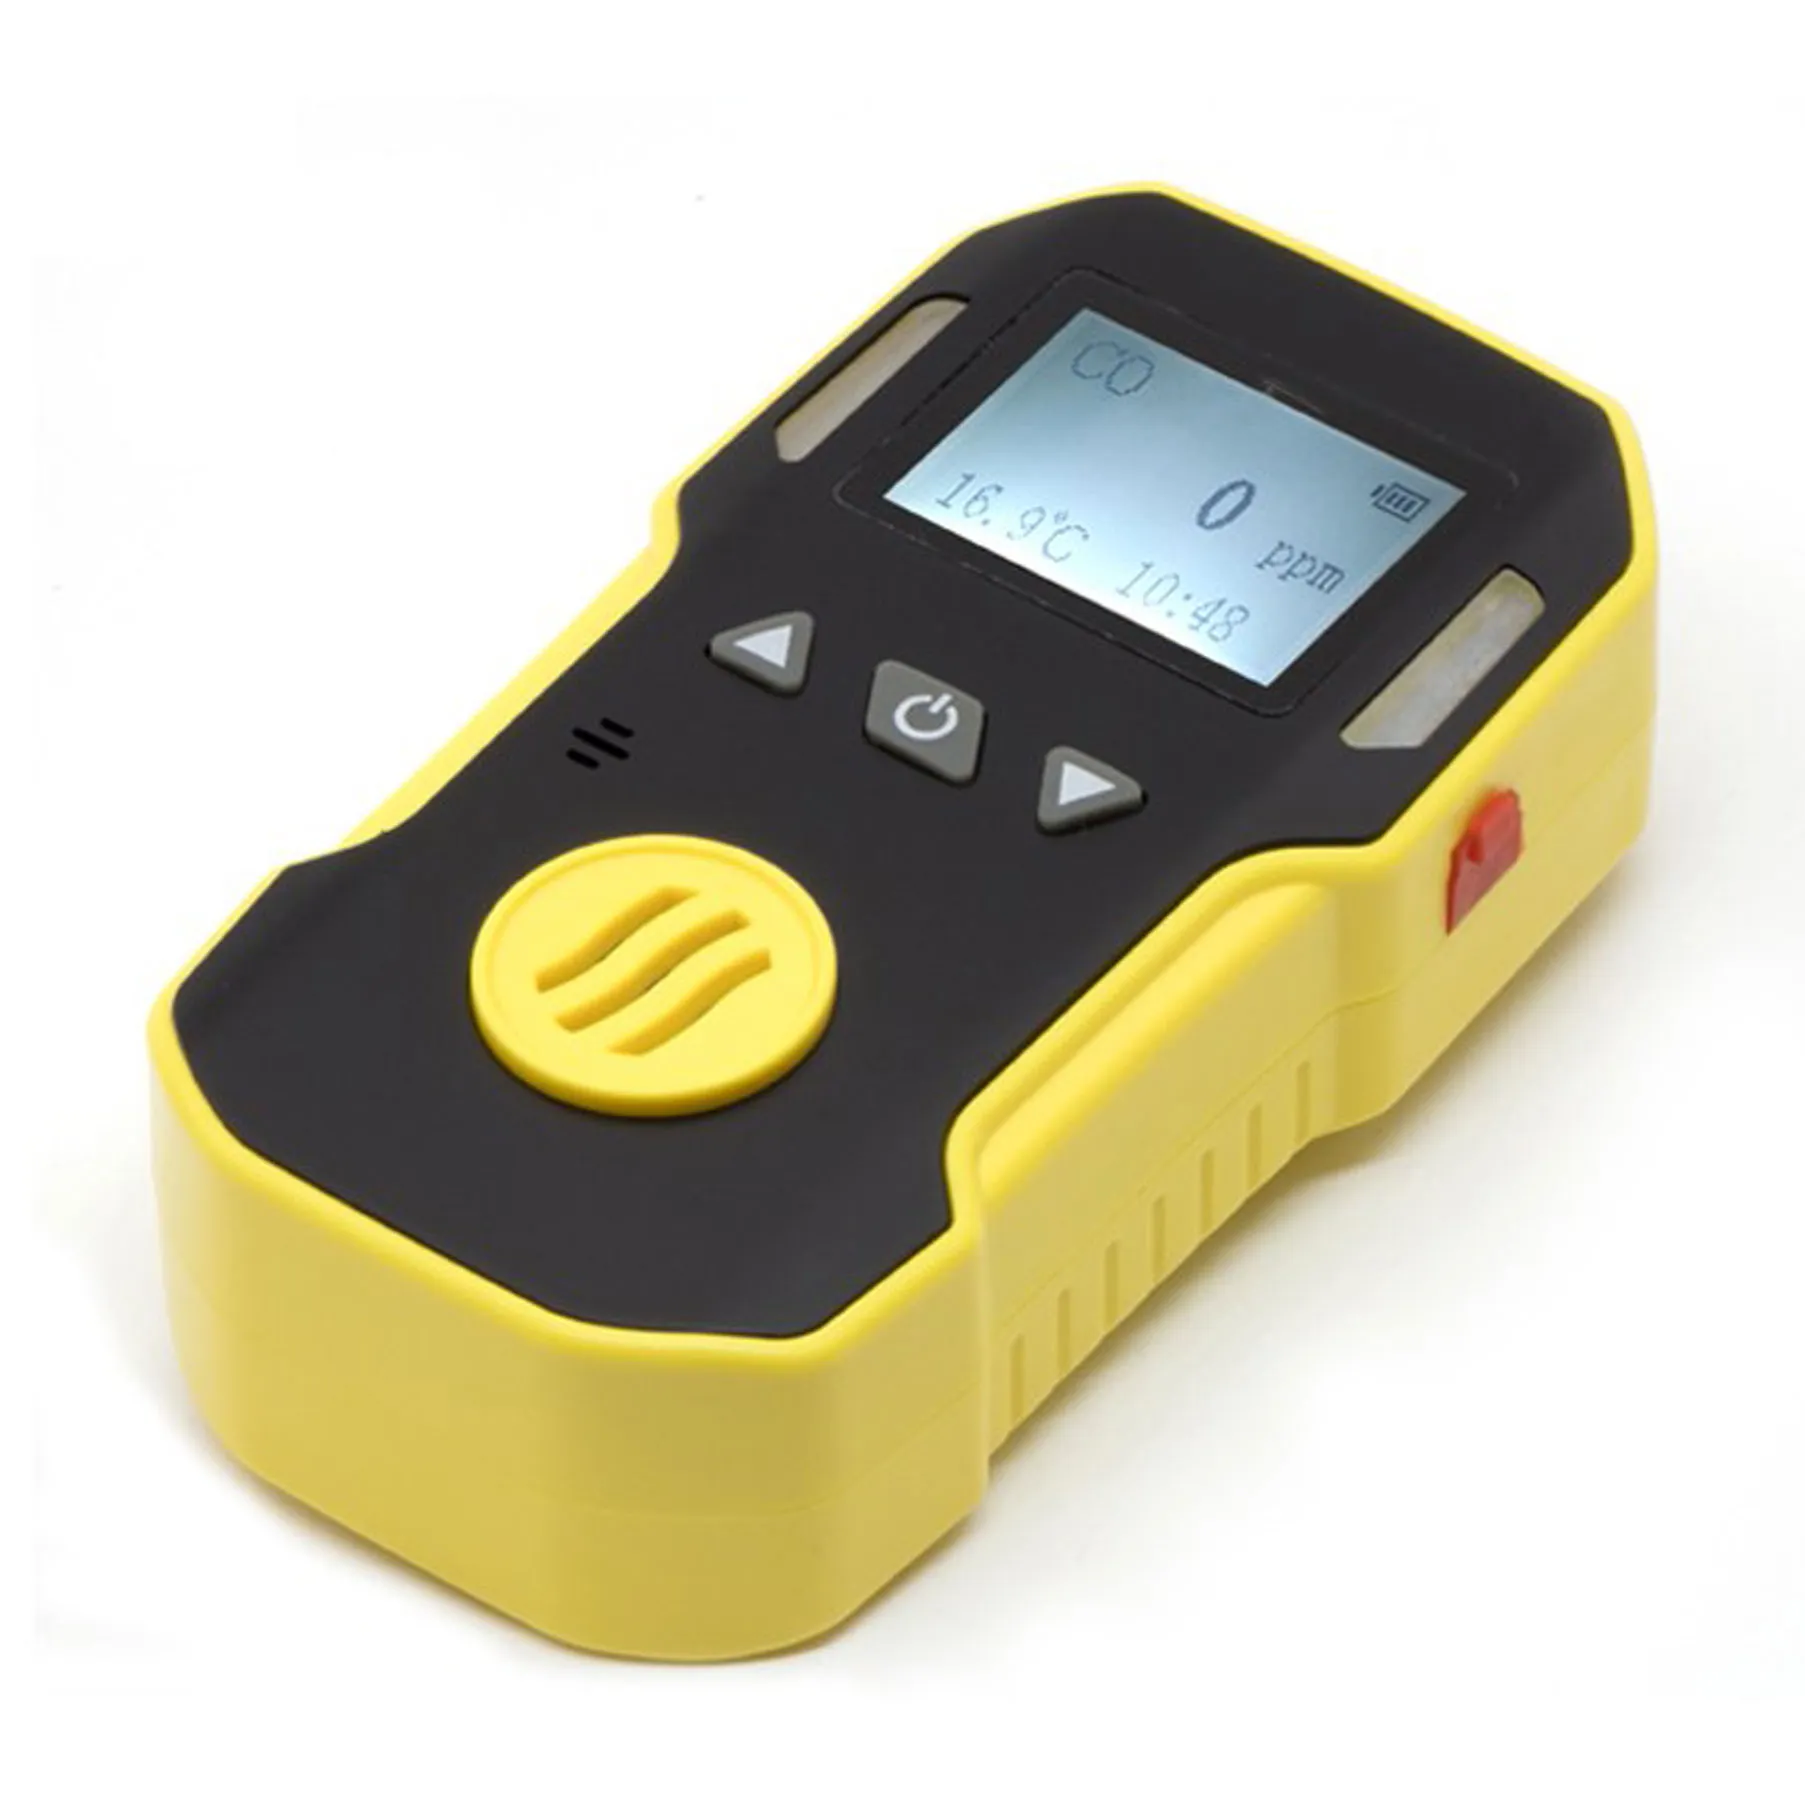 Digital portátil no2 Detector de gás medidor Detector de dióxido de nitrogênio Tester BH-90A USB recarregável 0-20ppm à prova de explosão de poeira